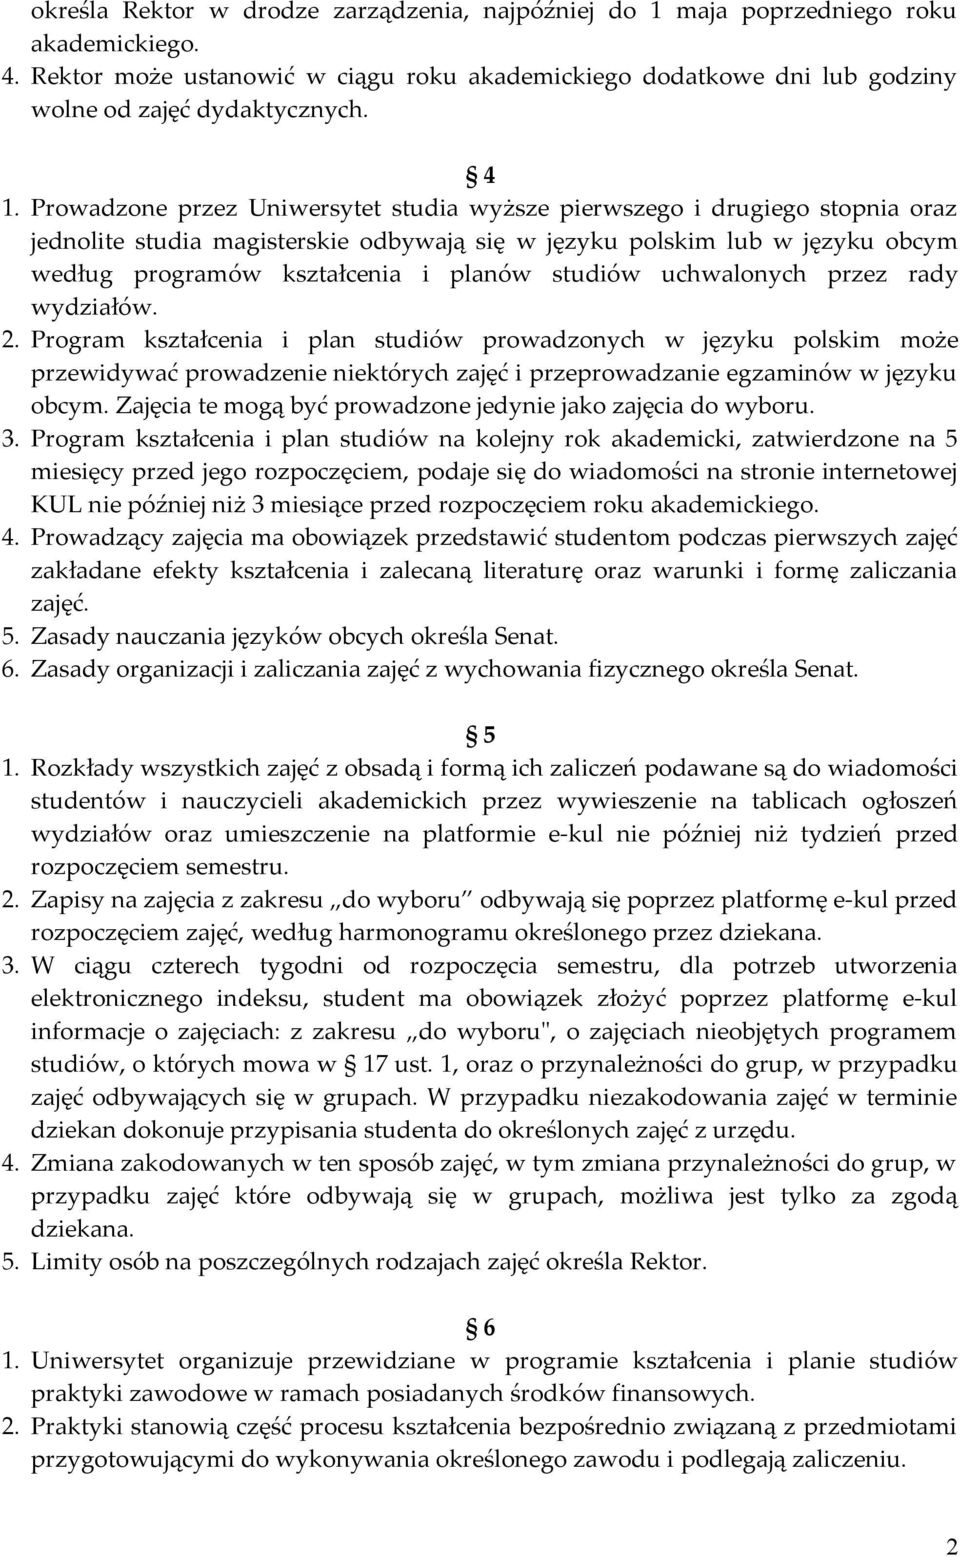 studiów uchwalonych przez rady wydziałów. 2. Program kształcenia i plan studiów prowadzonych w języku polskim może przewidywać prowadzenie niektórych zajęć i przeprowadzanie egzaminów w języku obcym.